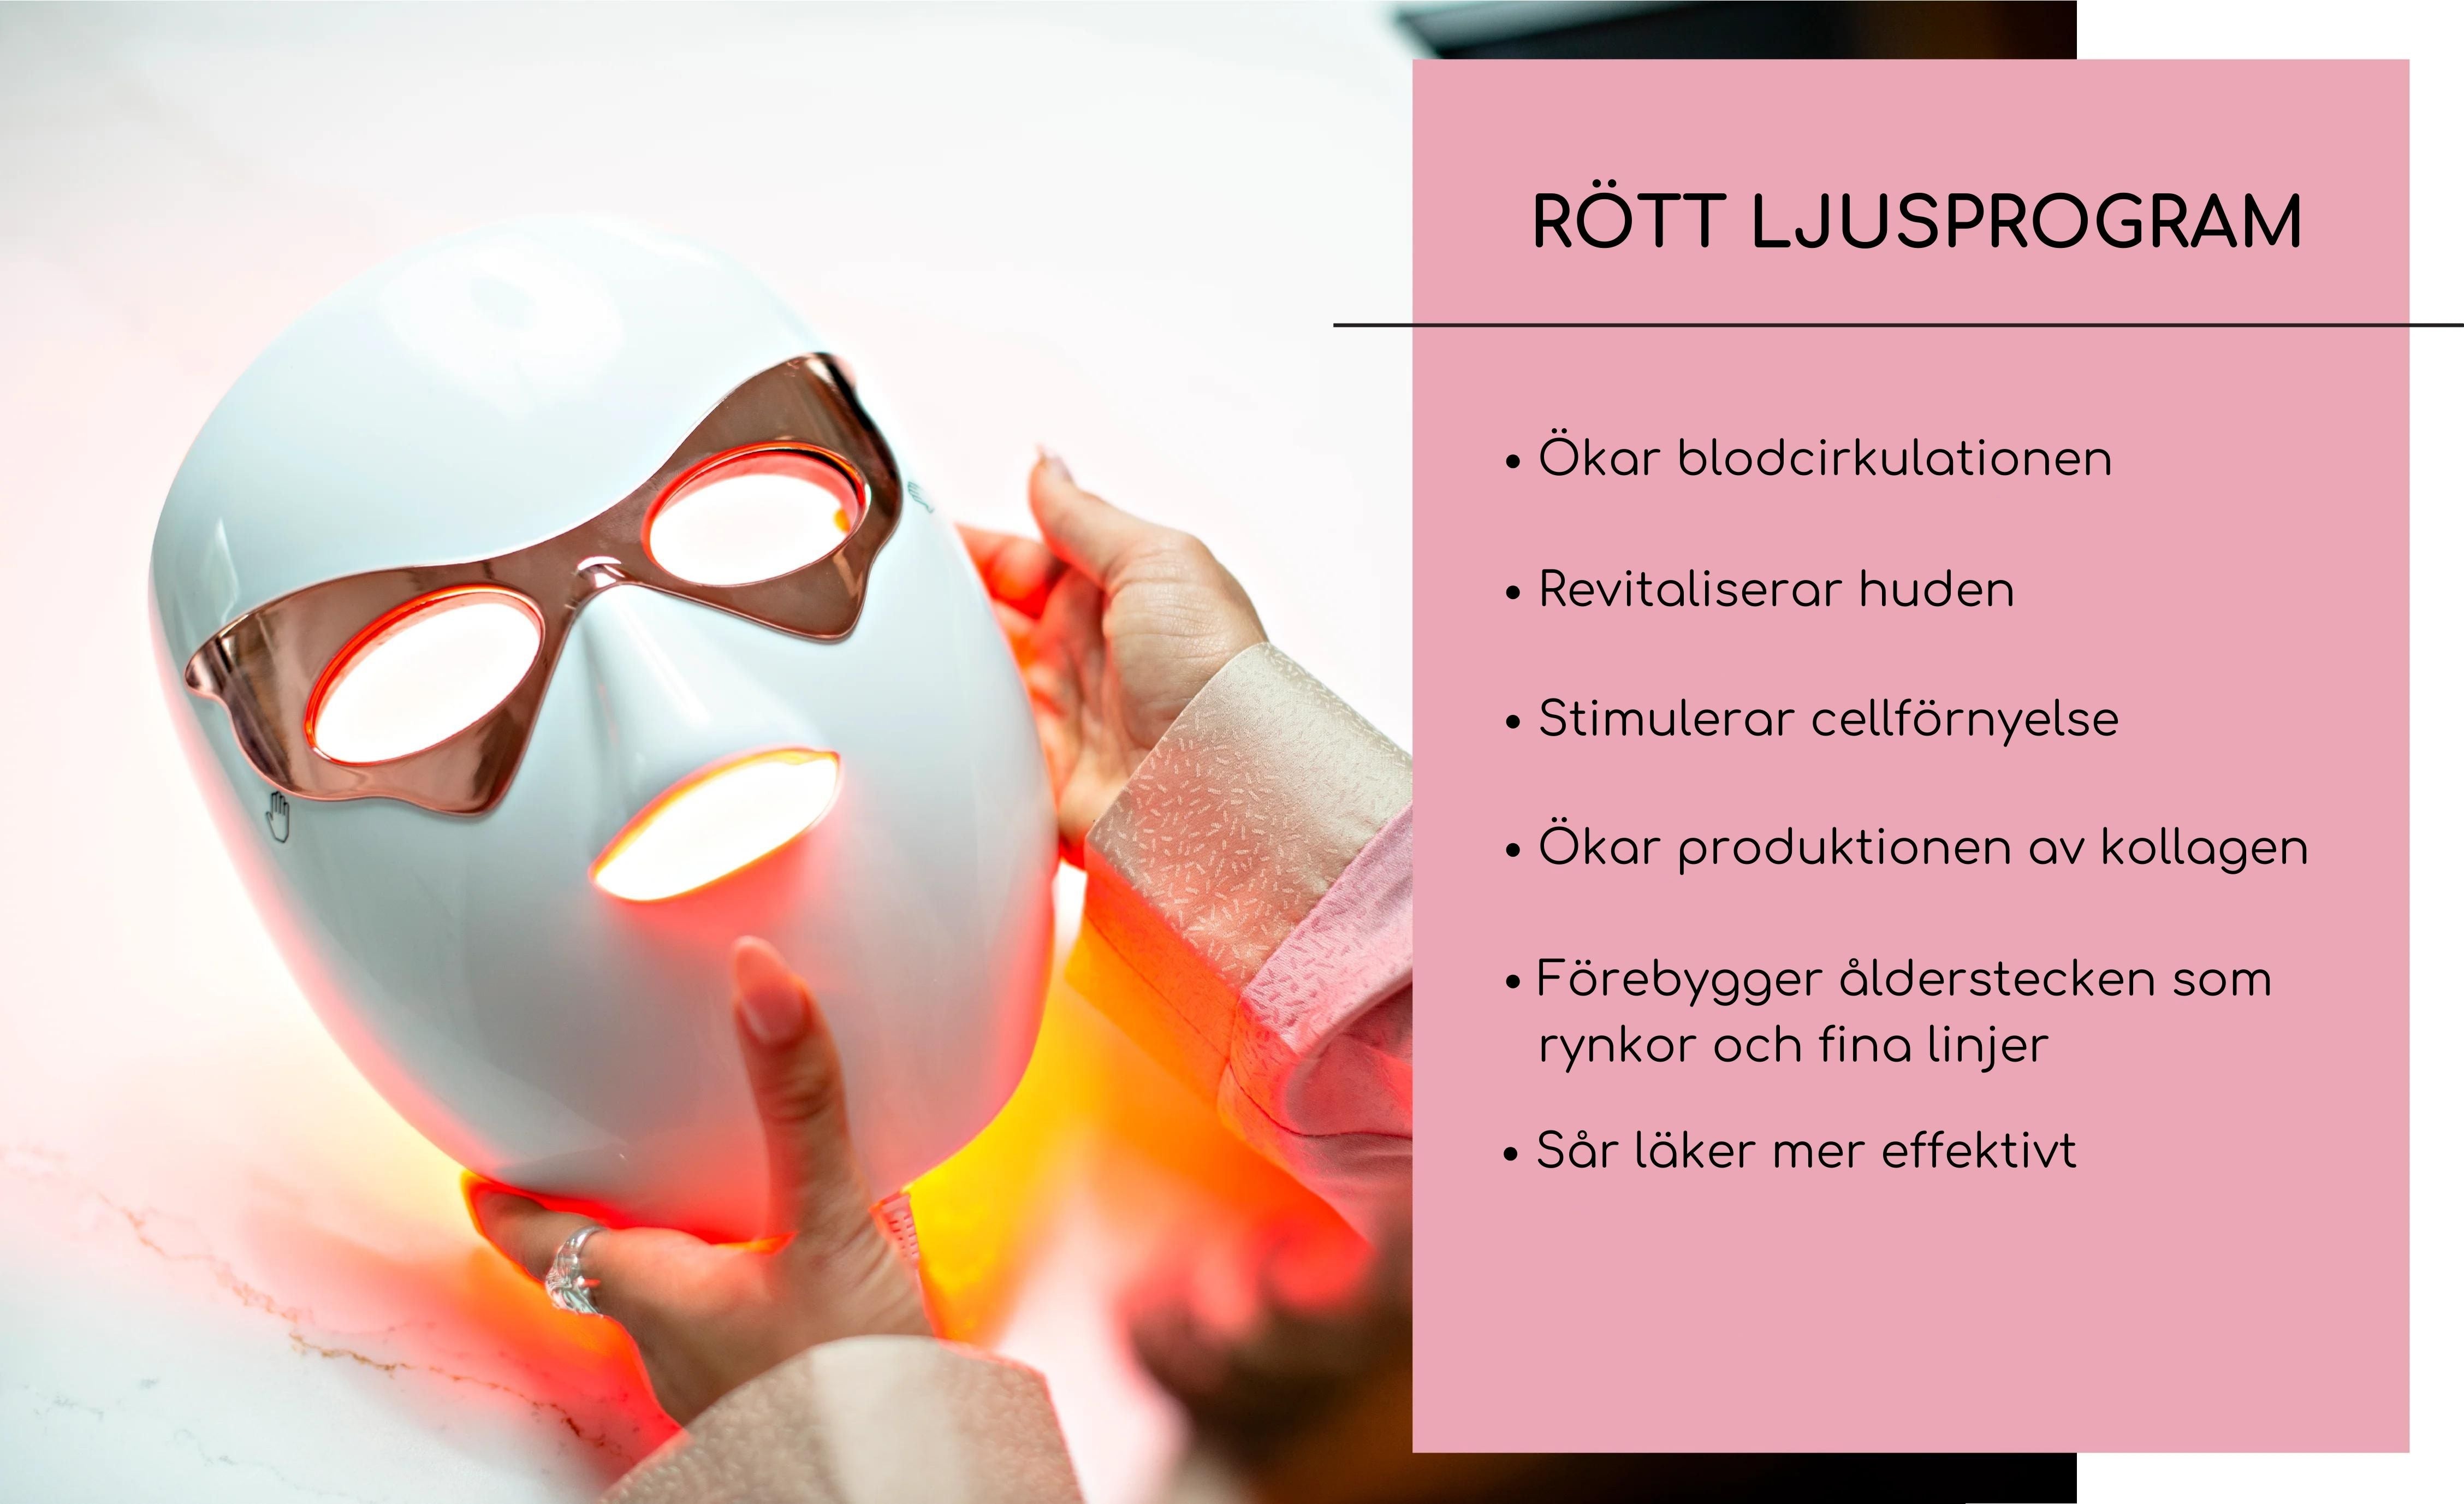 Rött ljusprogram på LED-mask ökar blodcirkulationen och stimulerar cellförnyelse för att förebygga ålderstecken.